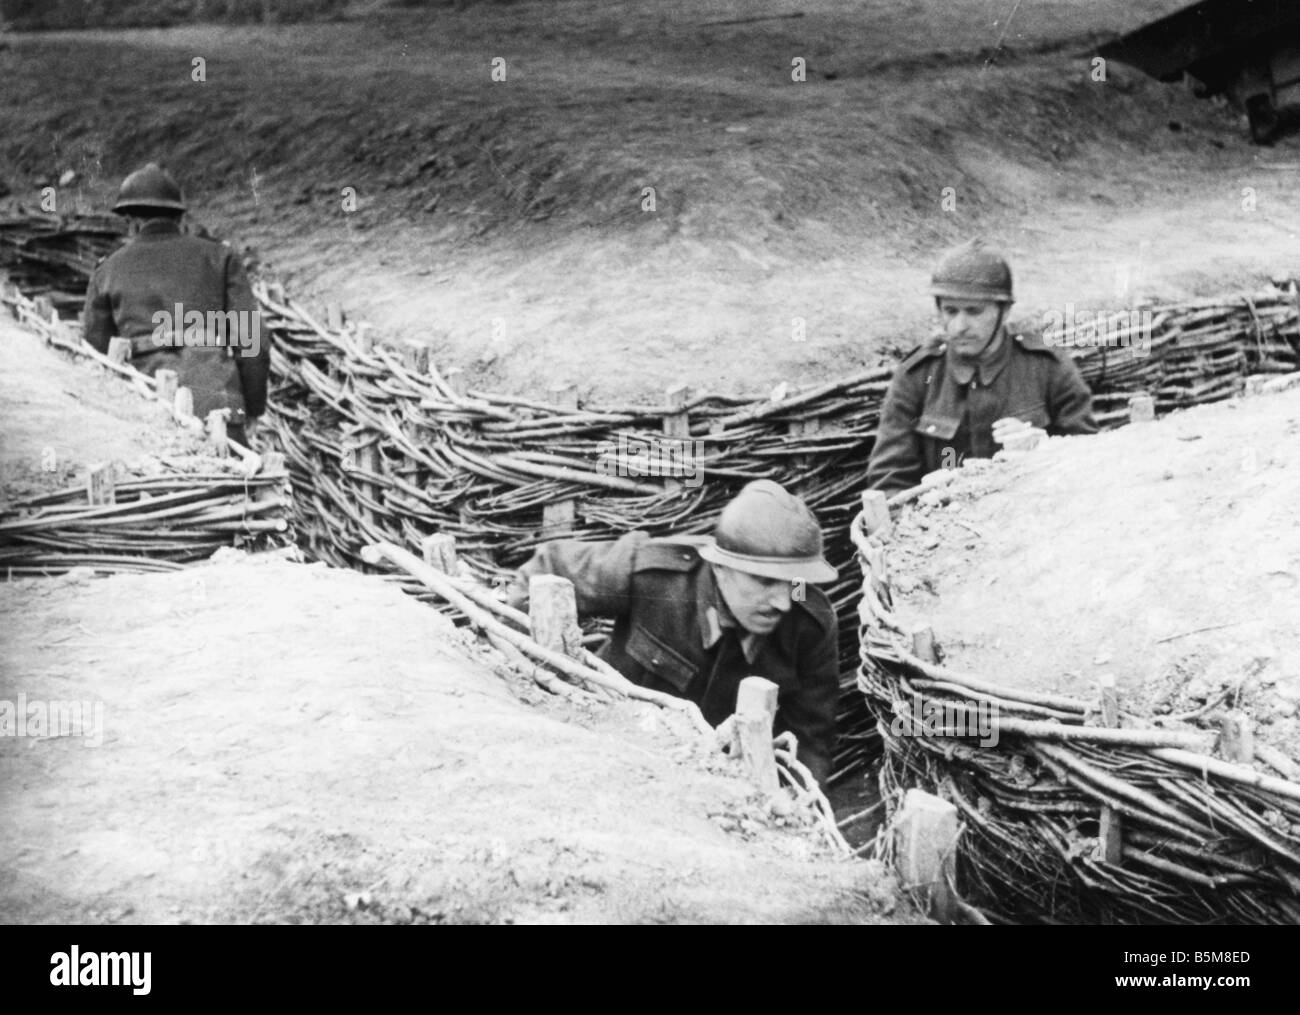 Französische Truppen in Schützengräben Weltkrieg Geschichte Frankreich Trench Warfare französische Soldaten in befestigte Schützengräben Foto undatiert Stockfoto